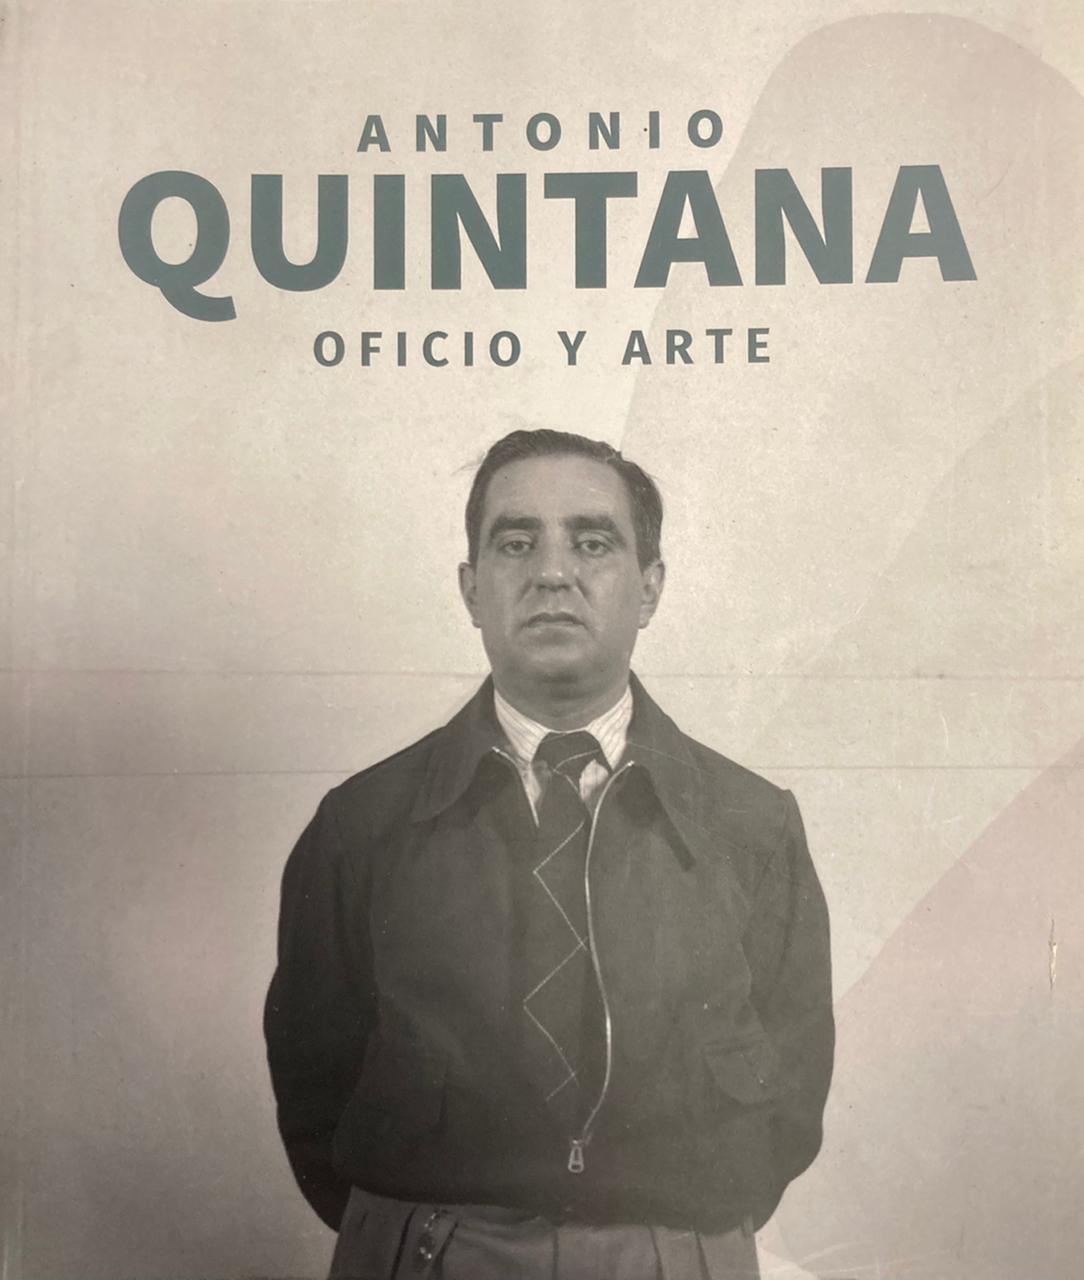 Antonio Quintana. Oficio y arte